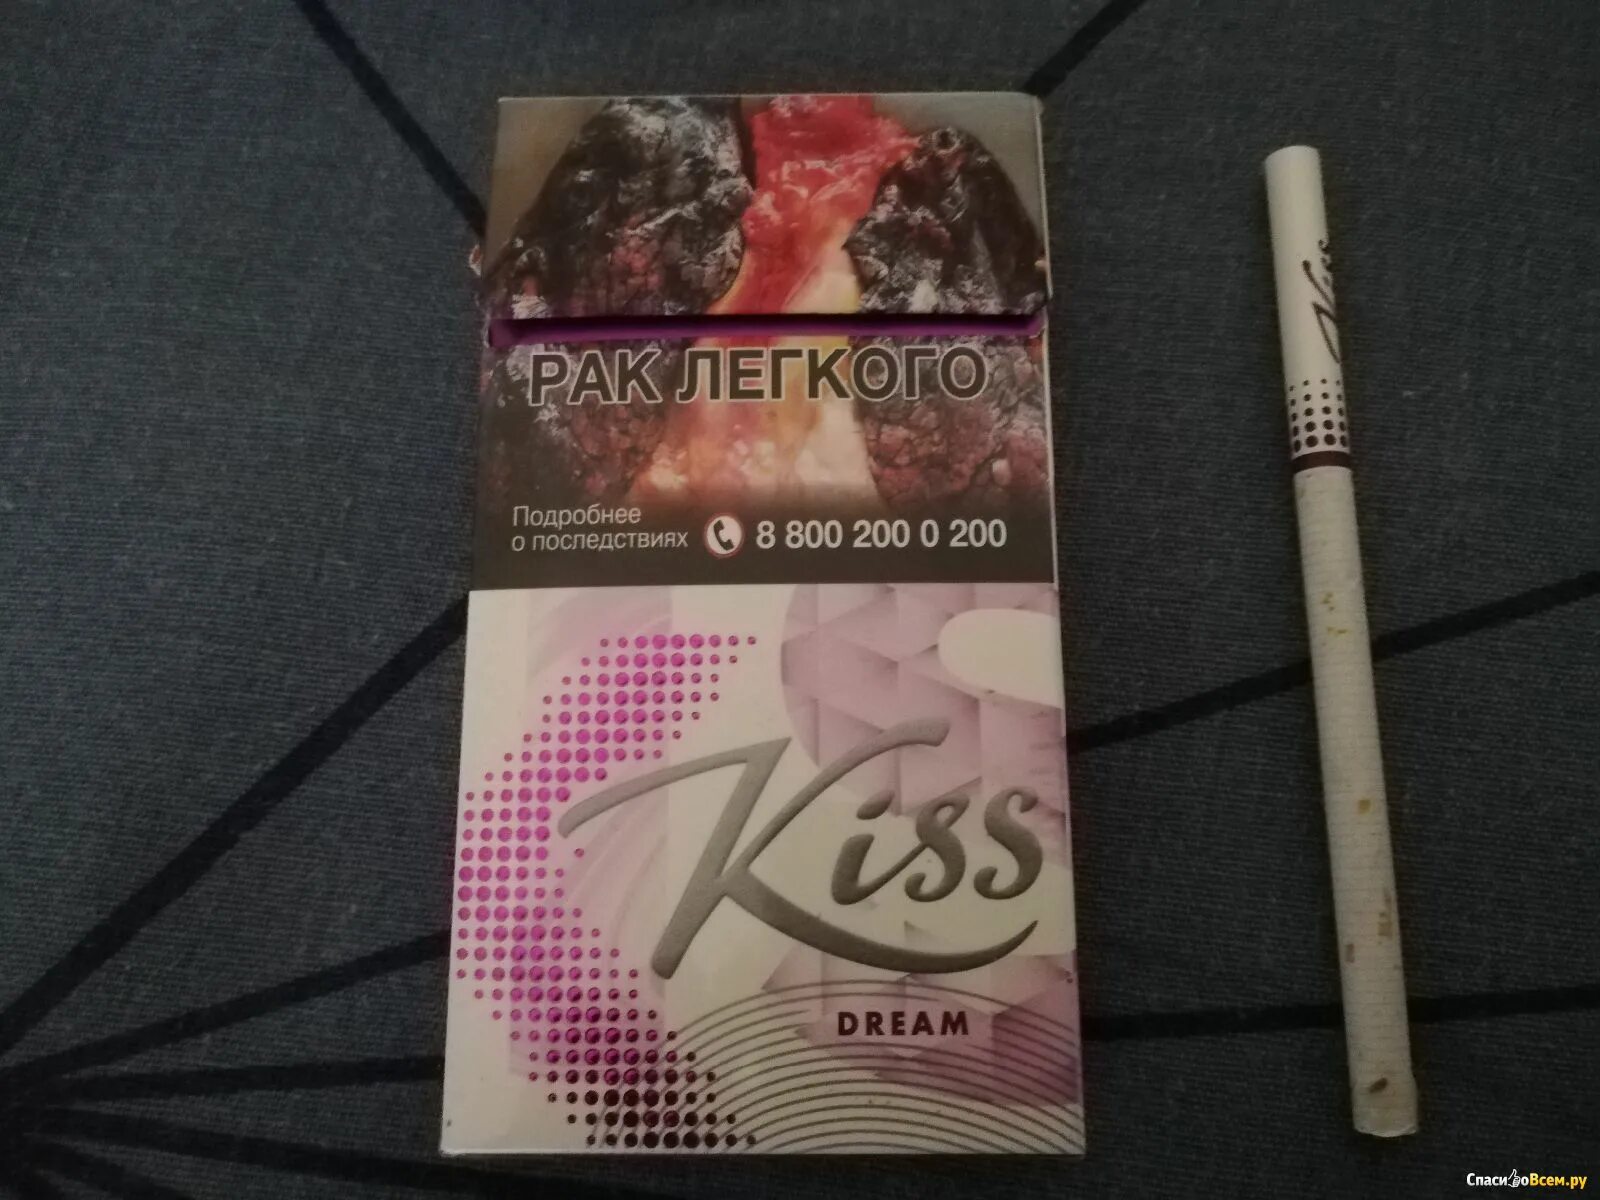 Сигареты Kiss Dream super Slims. Кисс фиолетовый сигареты слим. Сигареты Кисс Дрим фиолетовые. Kiss Dream SS сигареты.